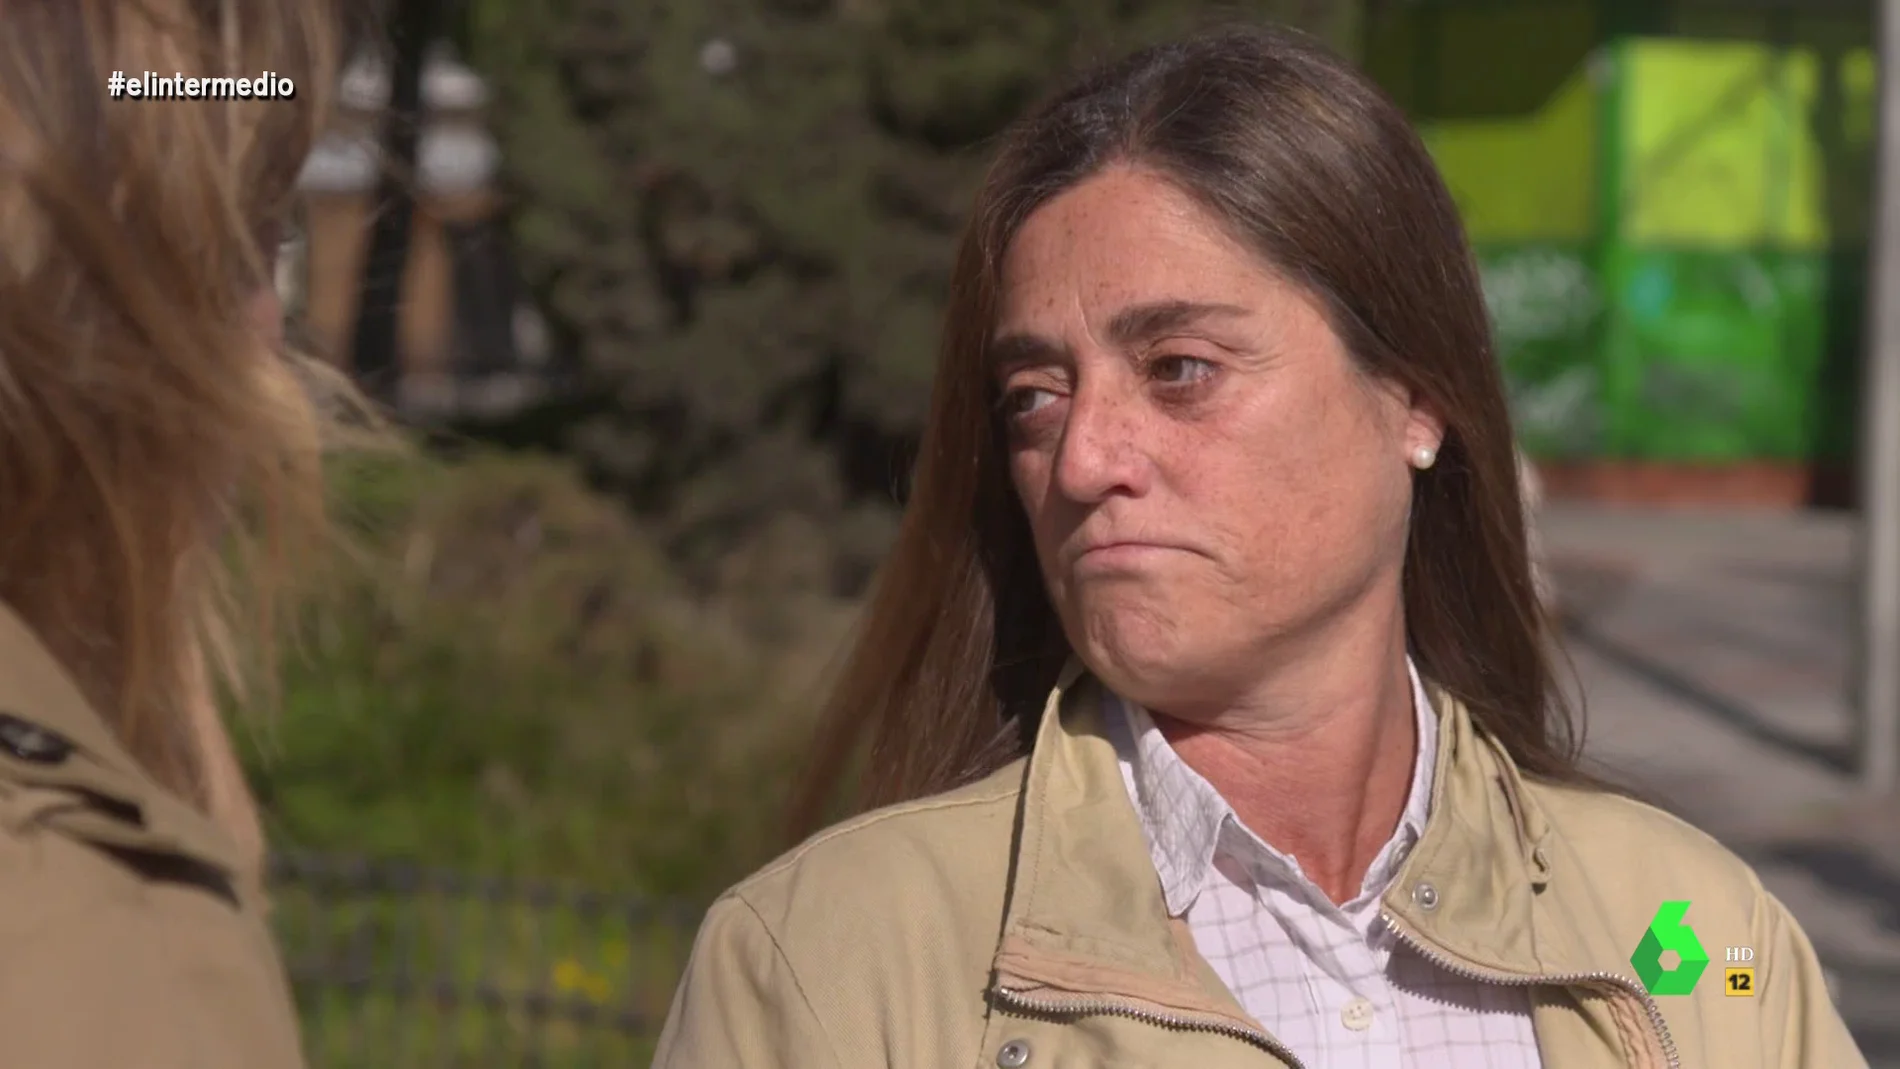 María Villanueva perdió a sus padres en una residencia pública de Madrid en pandemia: "Les dejaron morir"